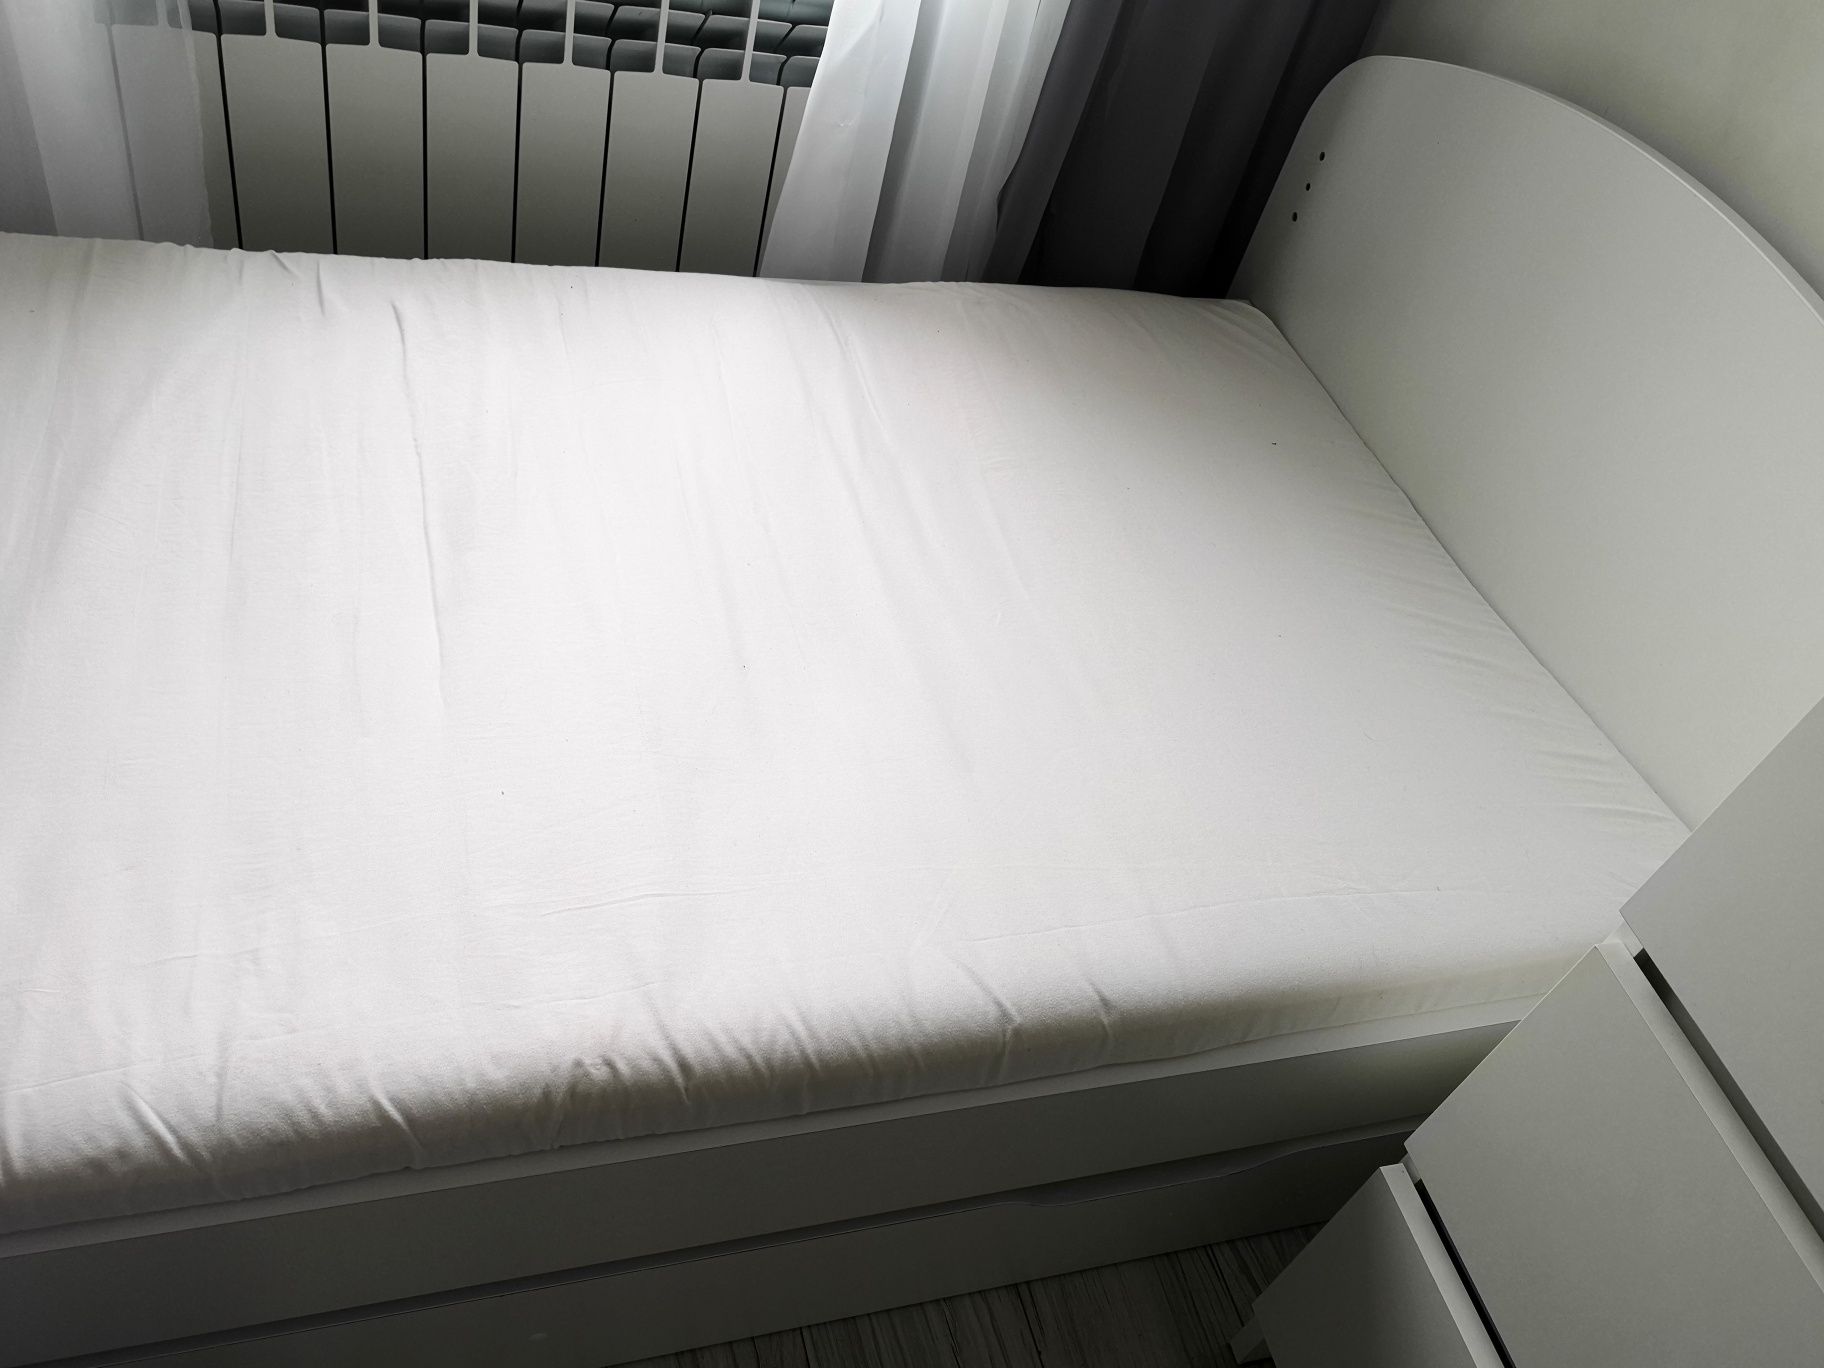 Łóżko dziecięce 164 cm x 93 cm białe